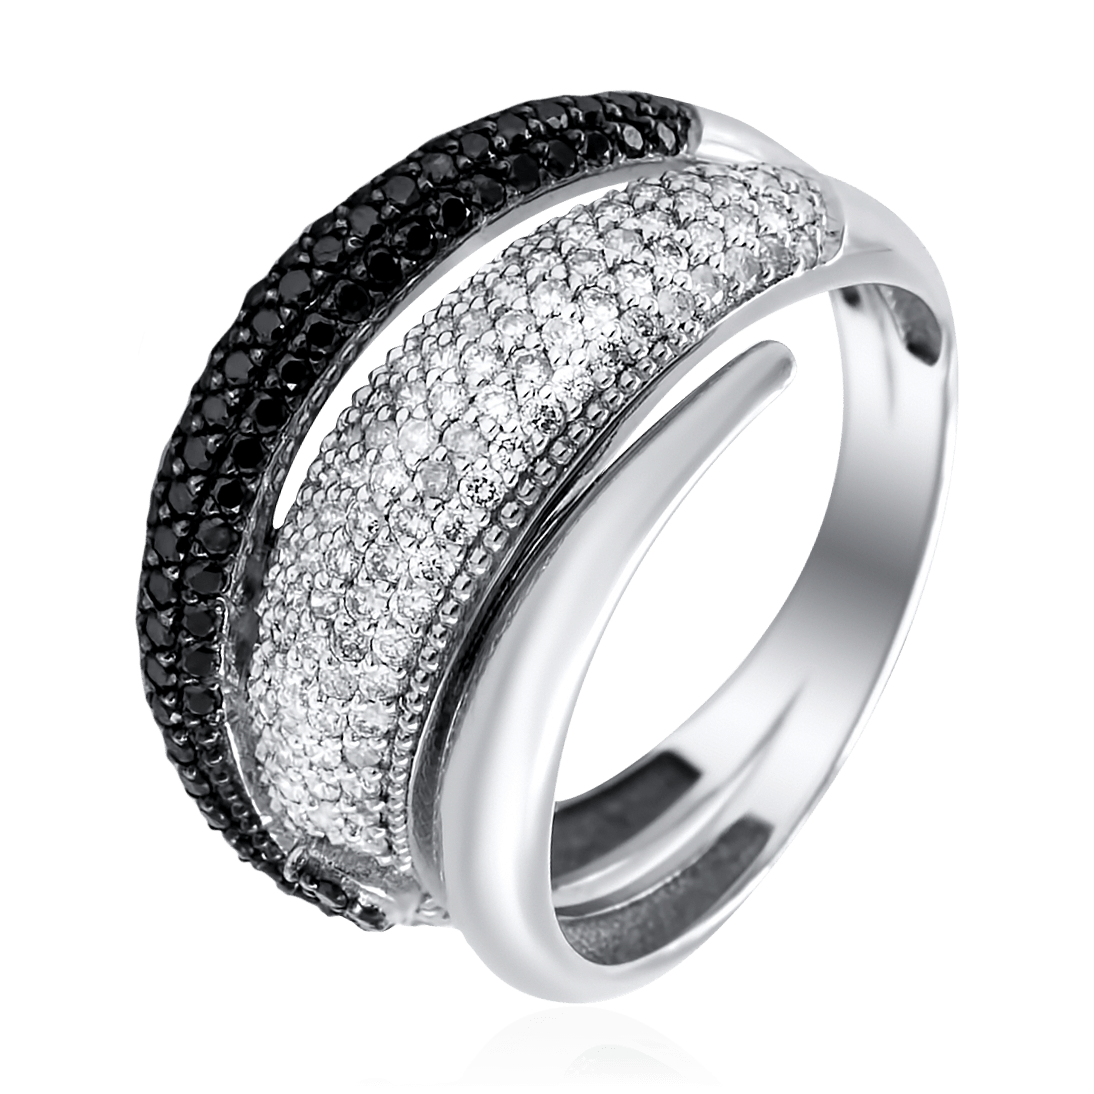 Кольцо с крошкой. Обручальное кольцо 1385603 1 1 1 с бриллиантовой крошкой. Кольцо с бриллиантовой крошкой. Кольцо с алмазной крошкой. Кольцо с крошкой бриллианта.